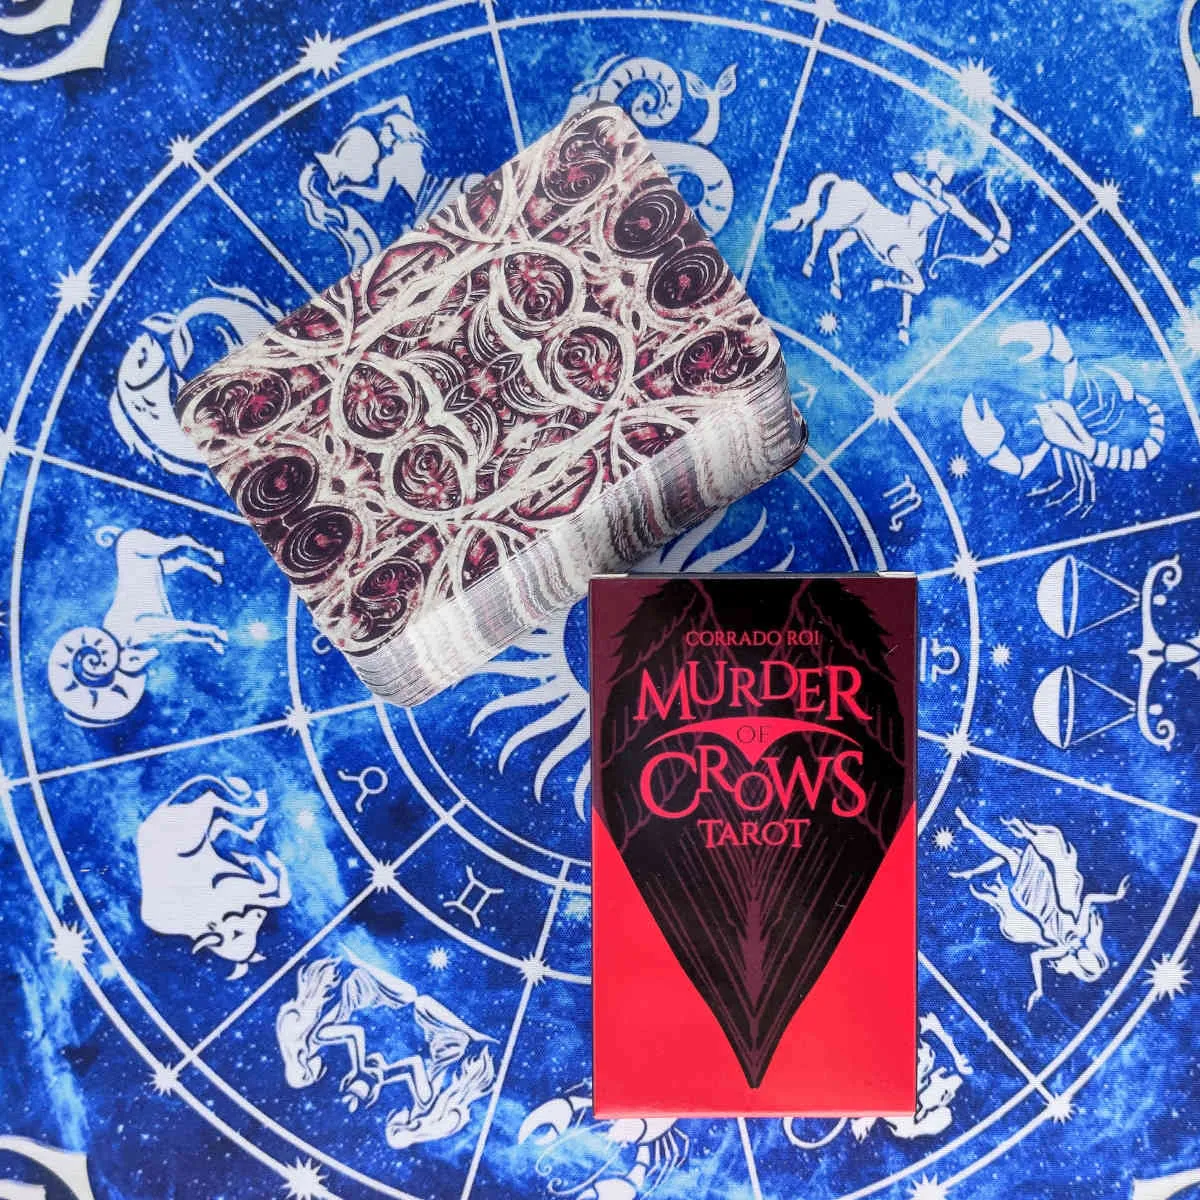 Nouveau Tarot Murder of Crows Cards Guidance Divination Deck Entertainment Parties Jeu de société / Box